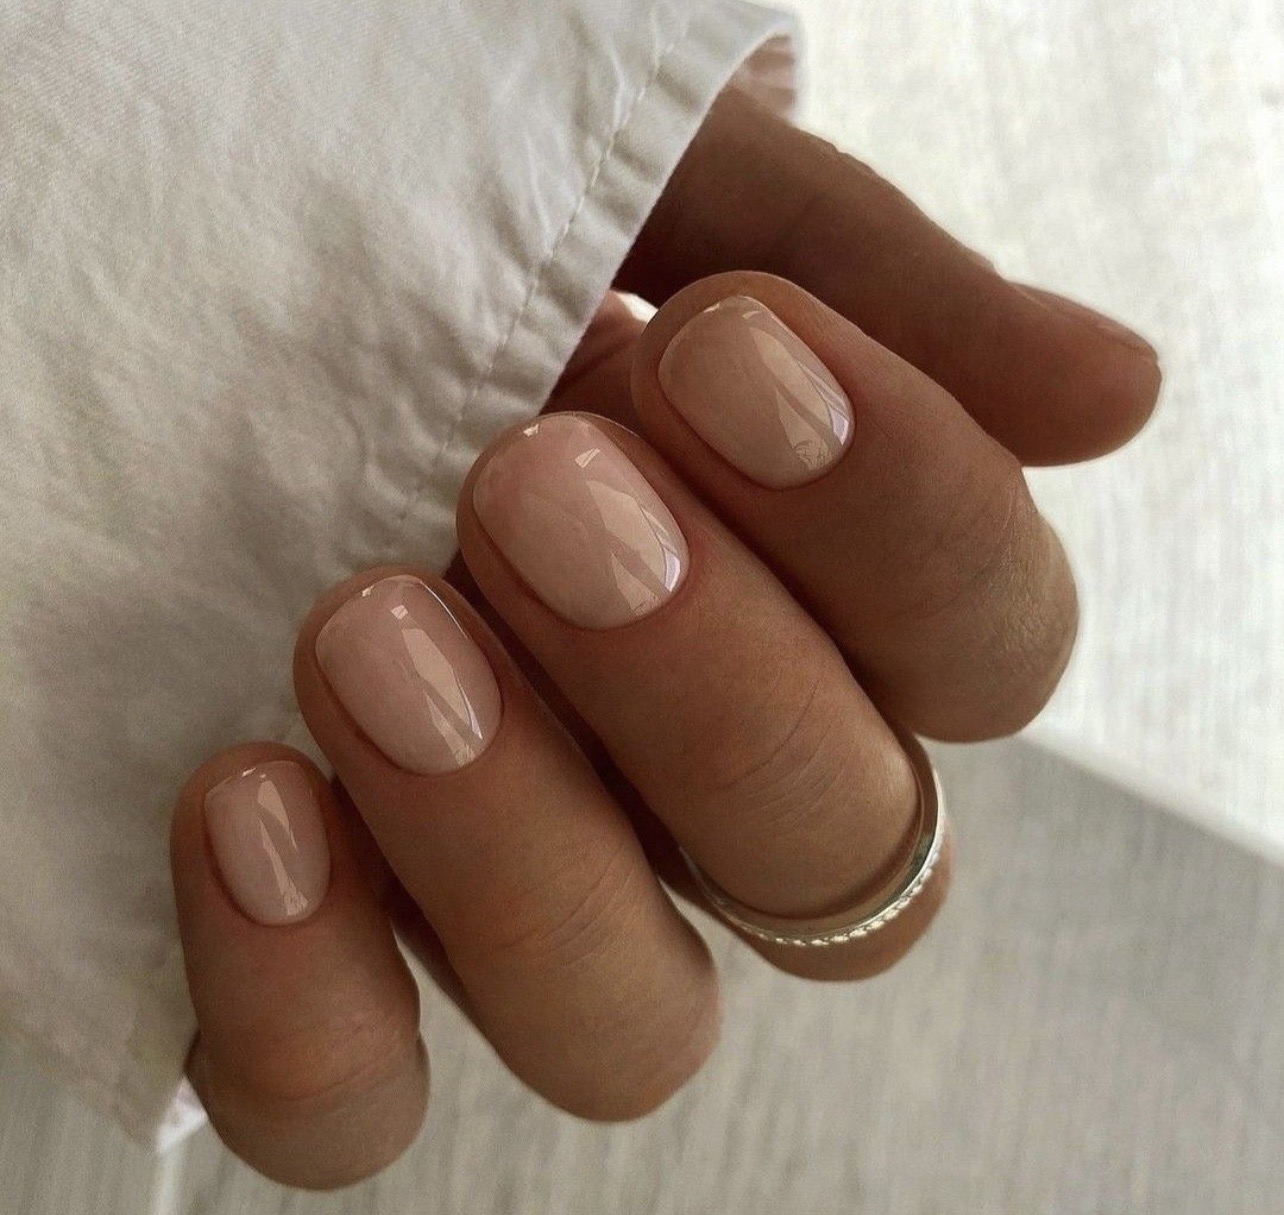 Clean Manicure: Η always chic τάση στα νύχια που ταιριάζει σε όλες τις αποχρώσεις δέρματος